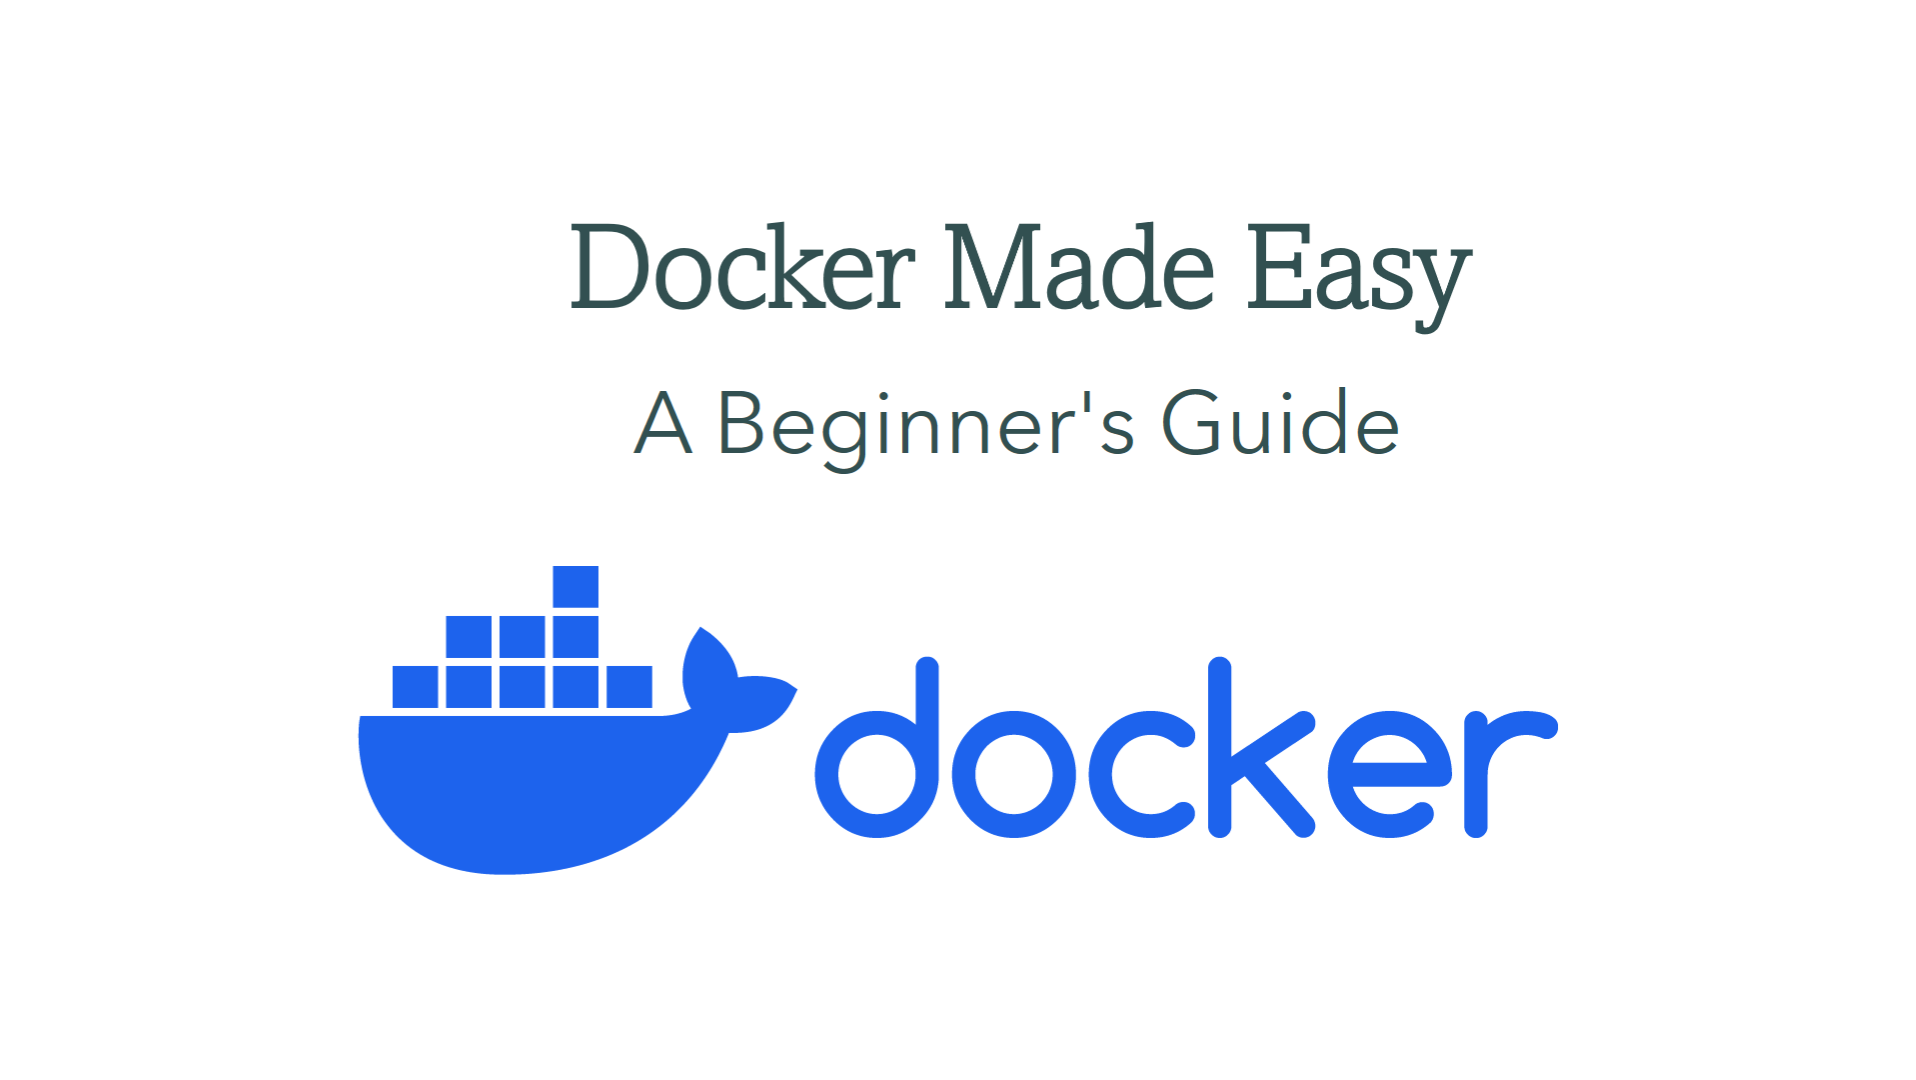 Docker for beginner